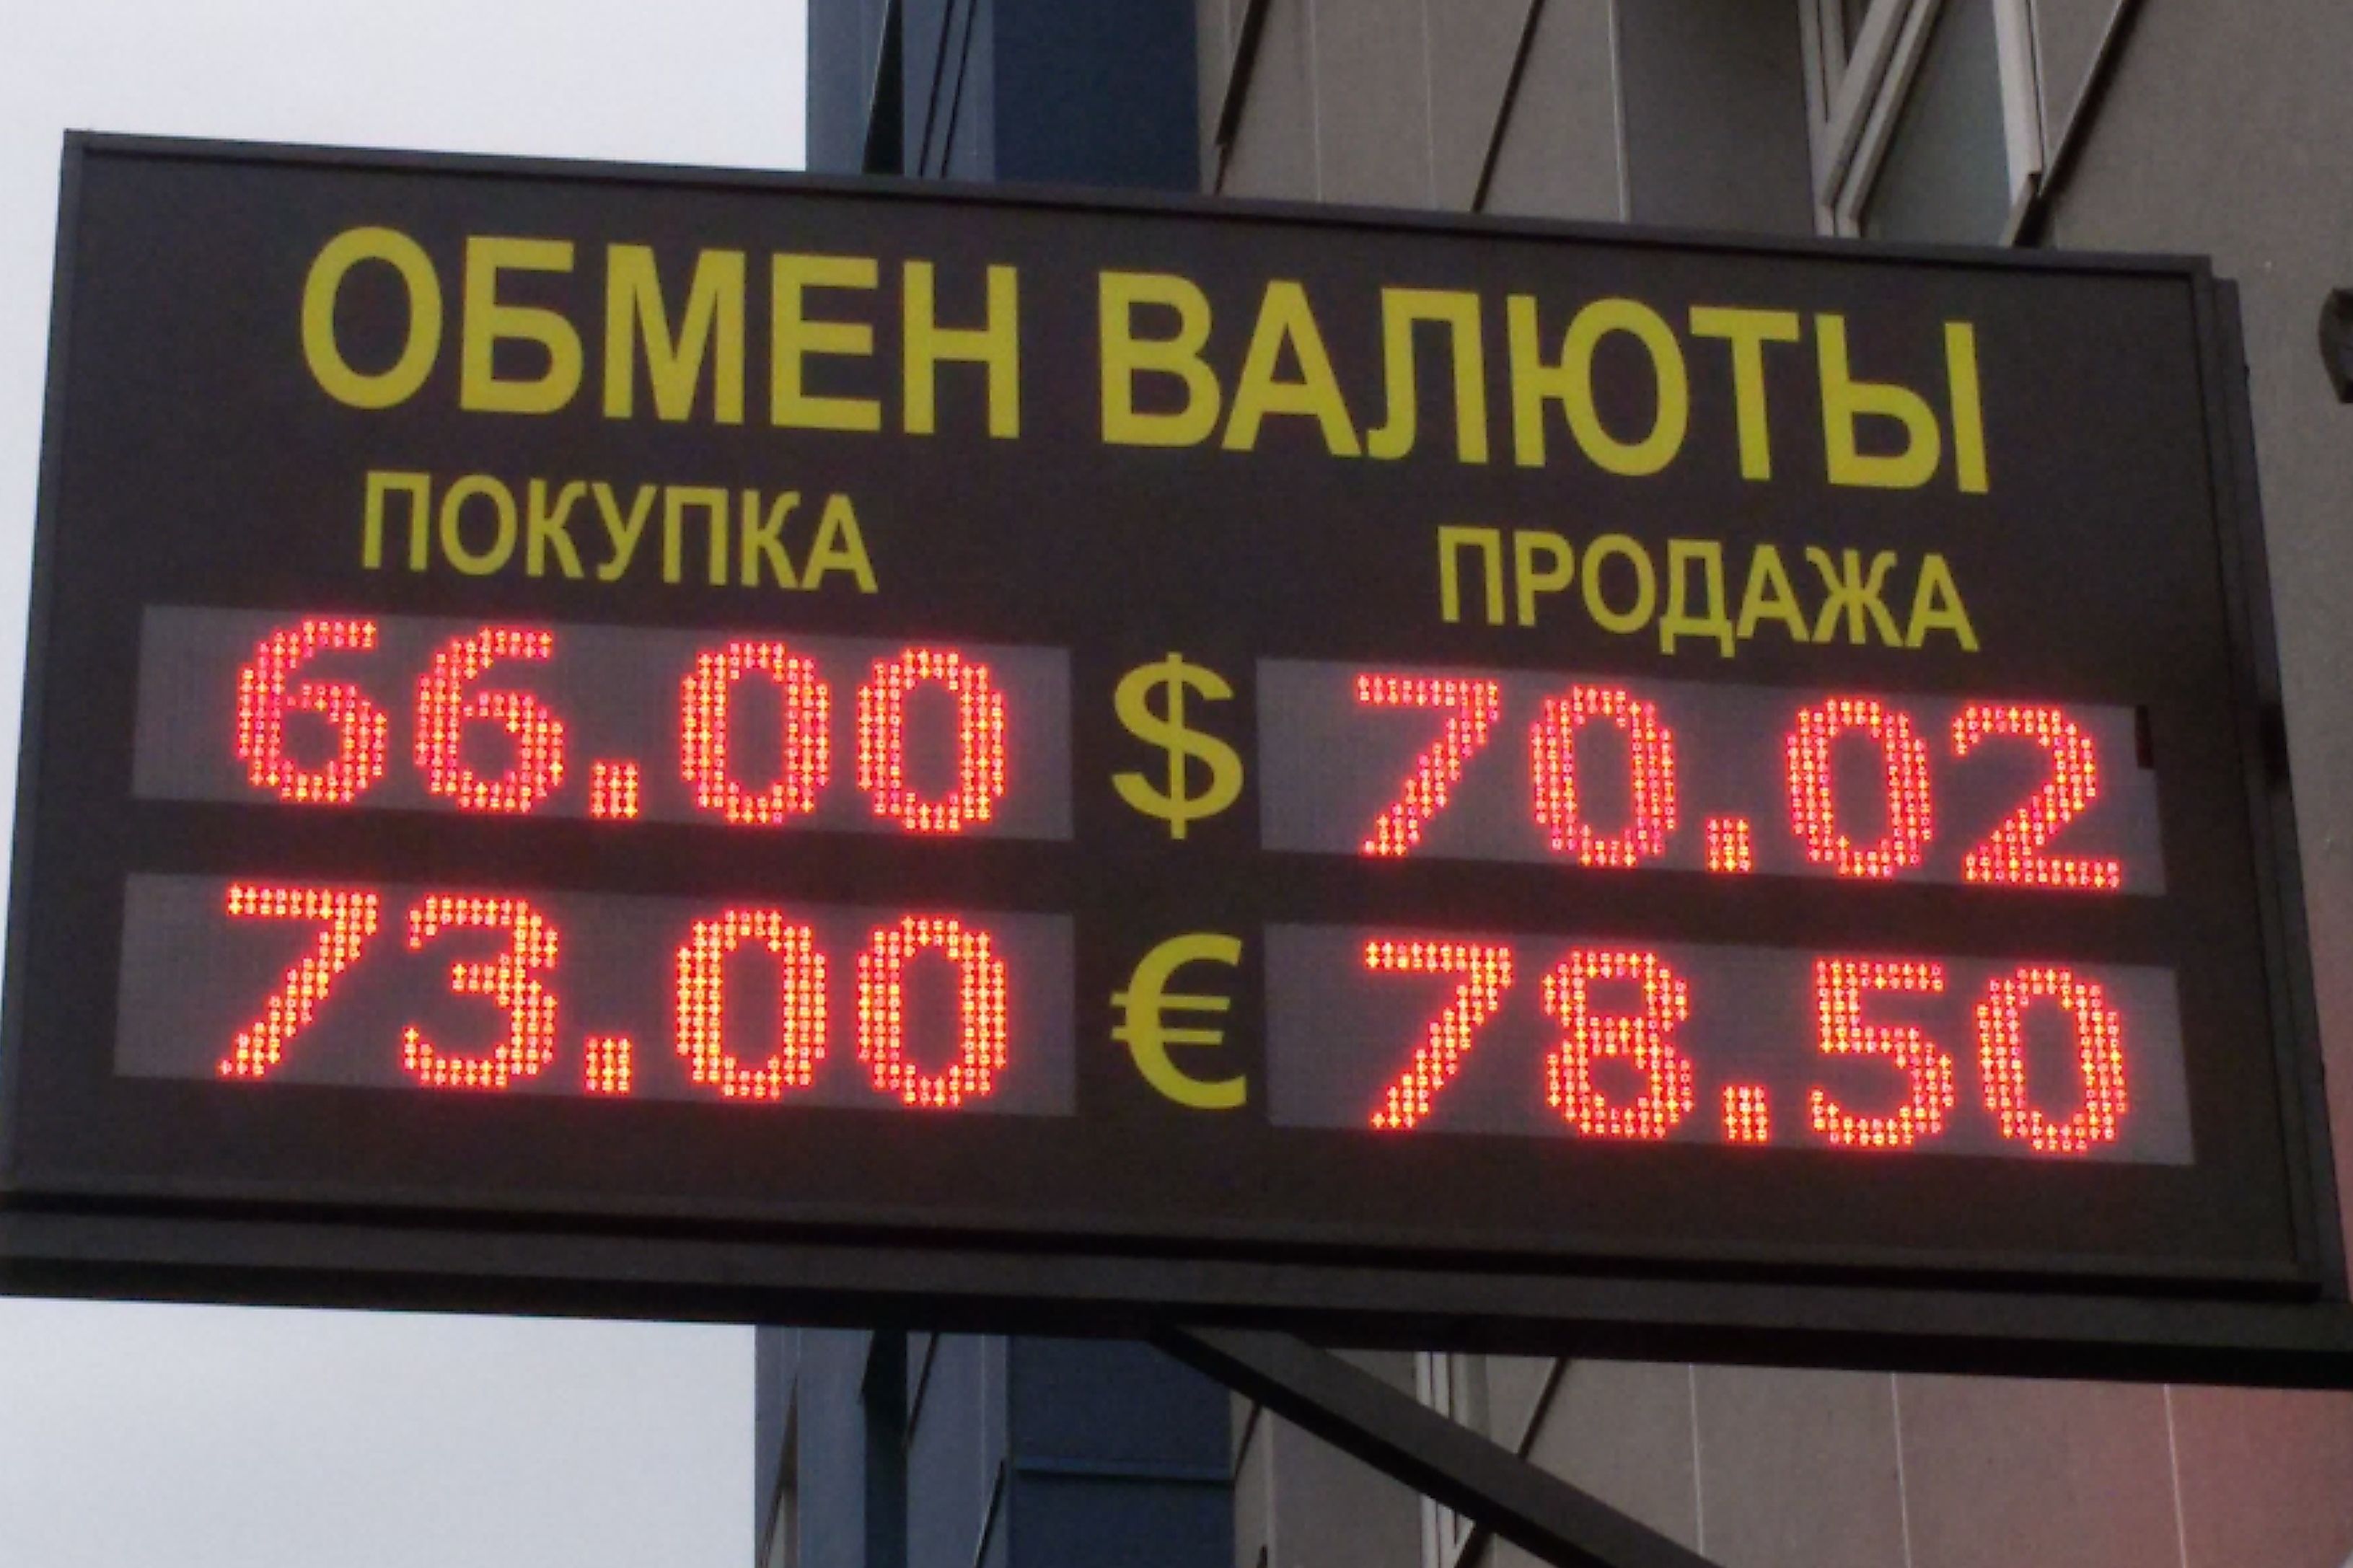 Обмен валют в россии a эффективность майнинга 1060